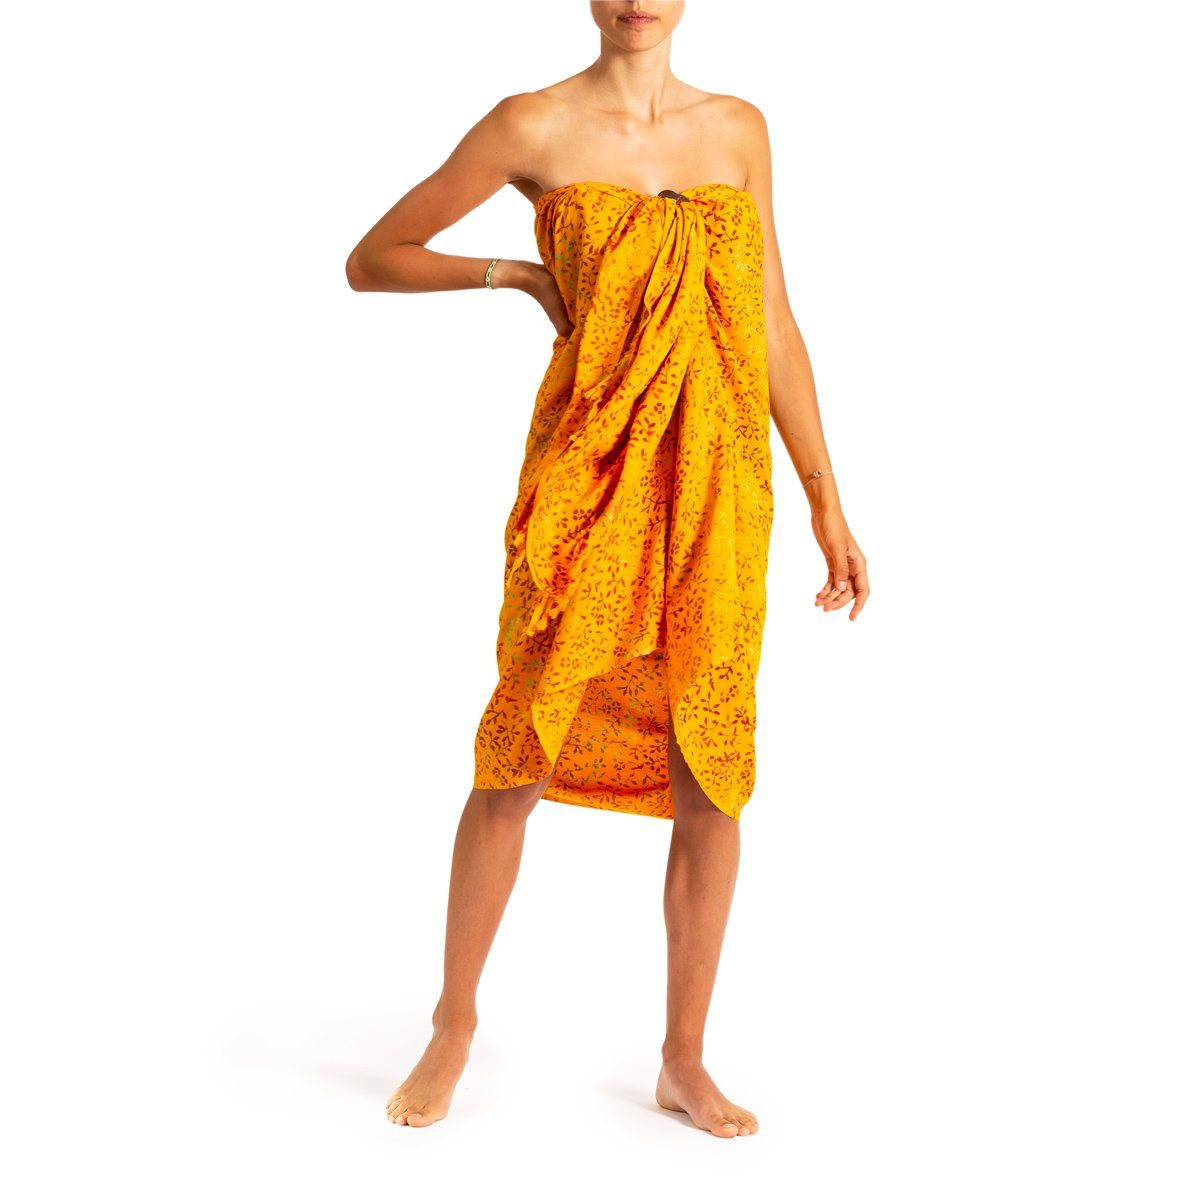 PANASIAM für Wachsbatik Wickelkleid aus als B303 weicher orange oder Sarong Schultertuch, ob leaf Jahreszeit Strandtuch Halstuch wunderbar jede Viskose egal Schal